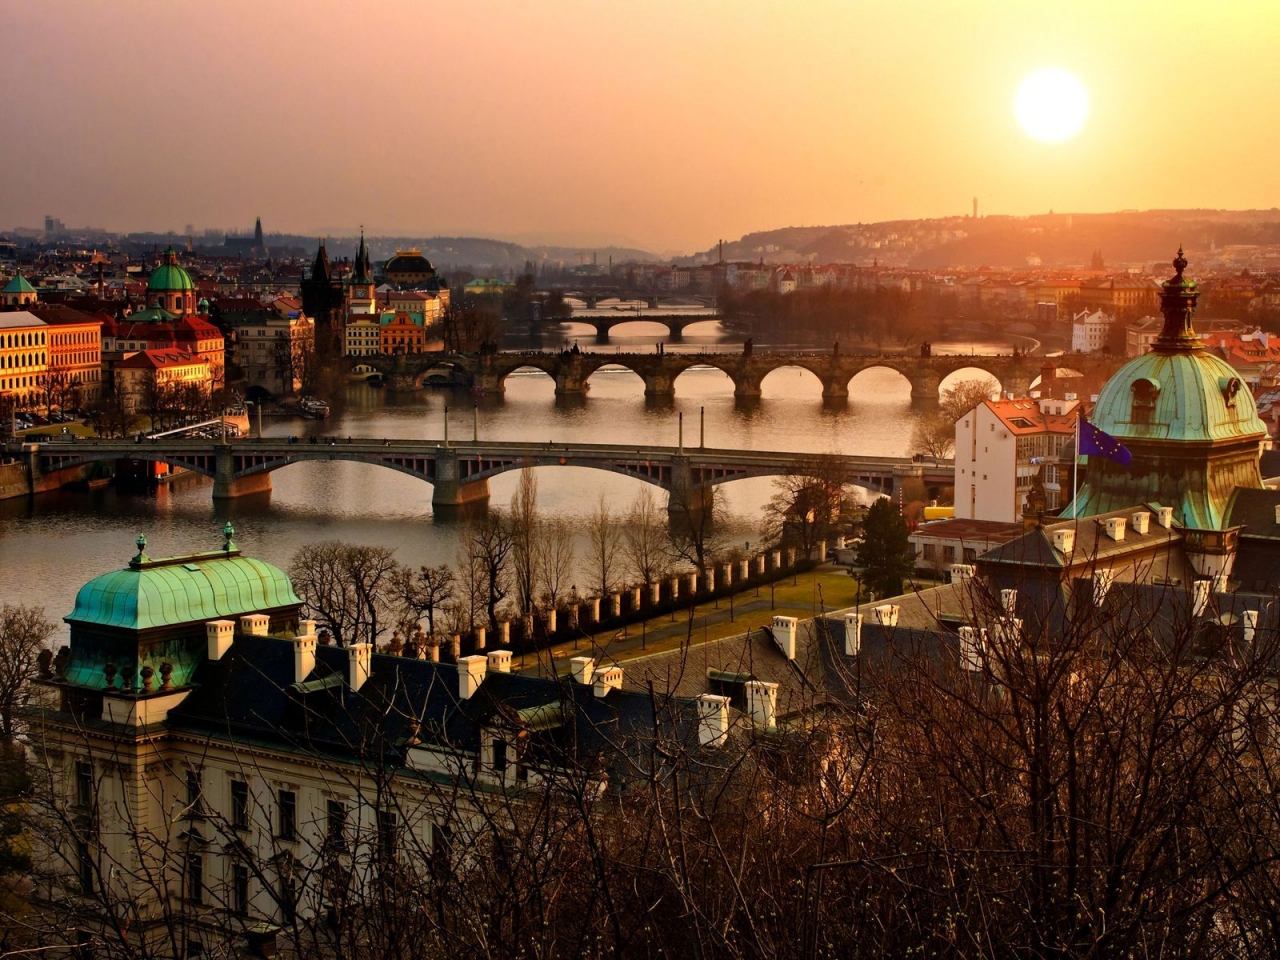 Prague for 1280 x 960 resolution